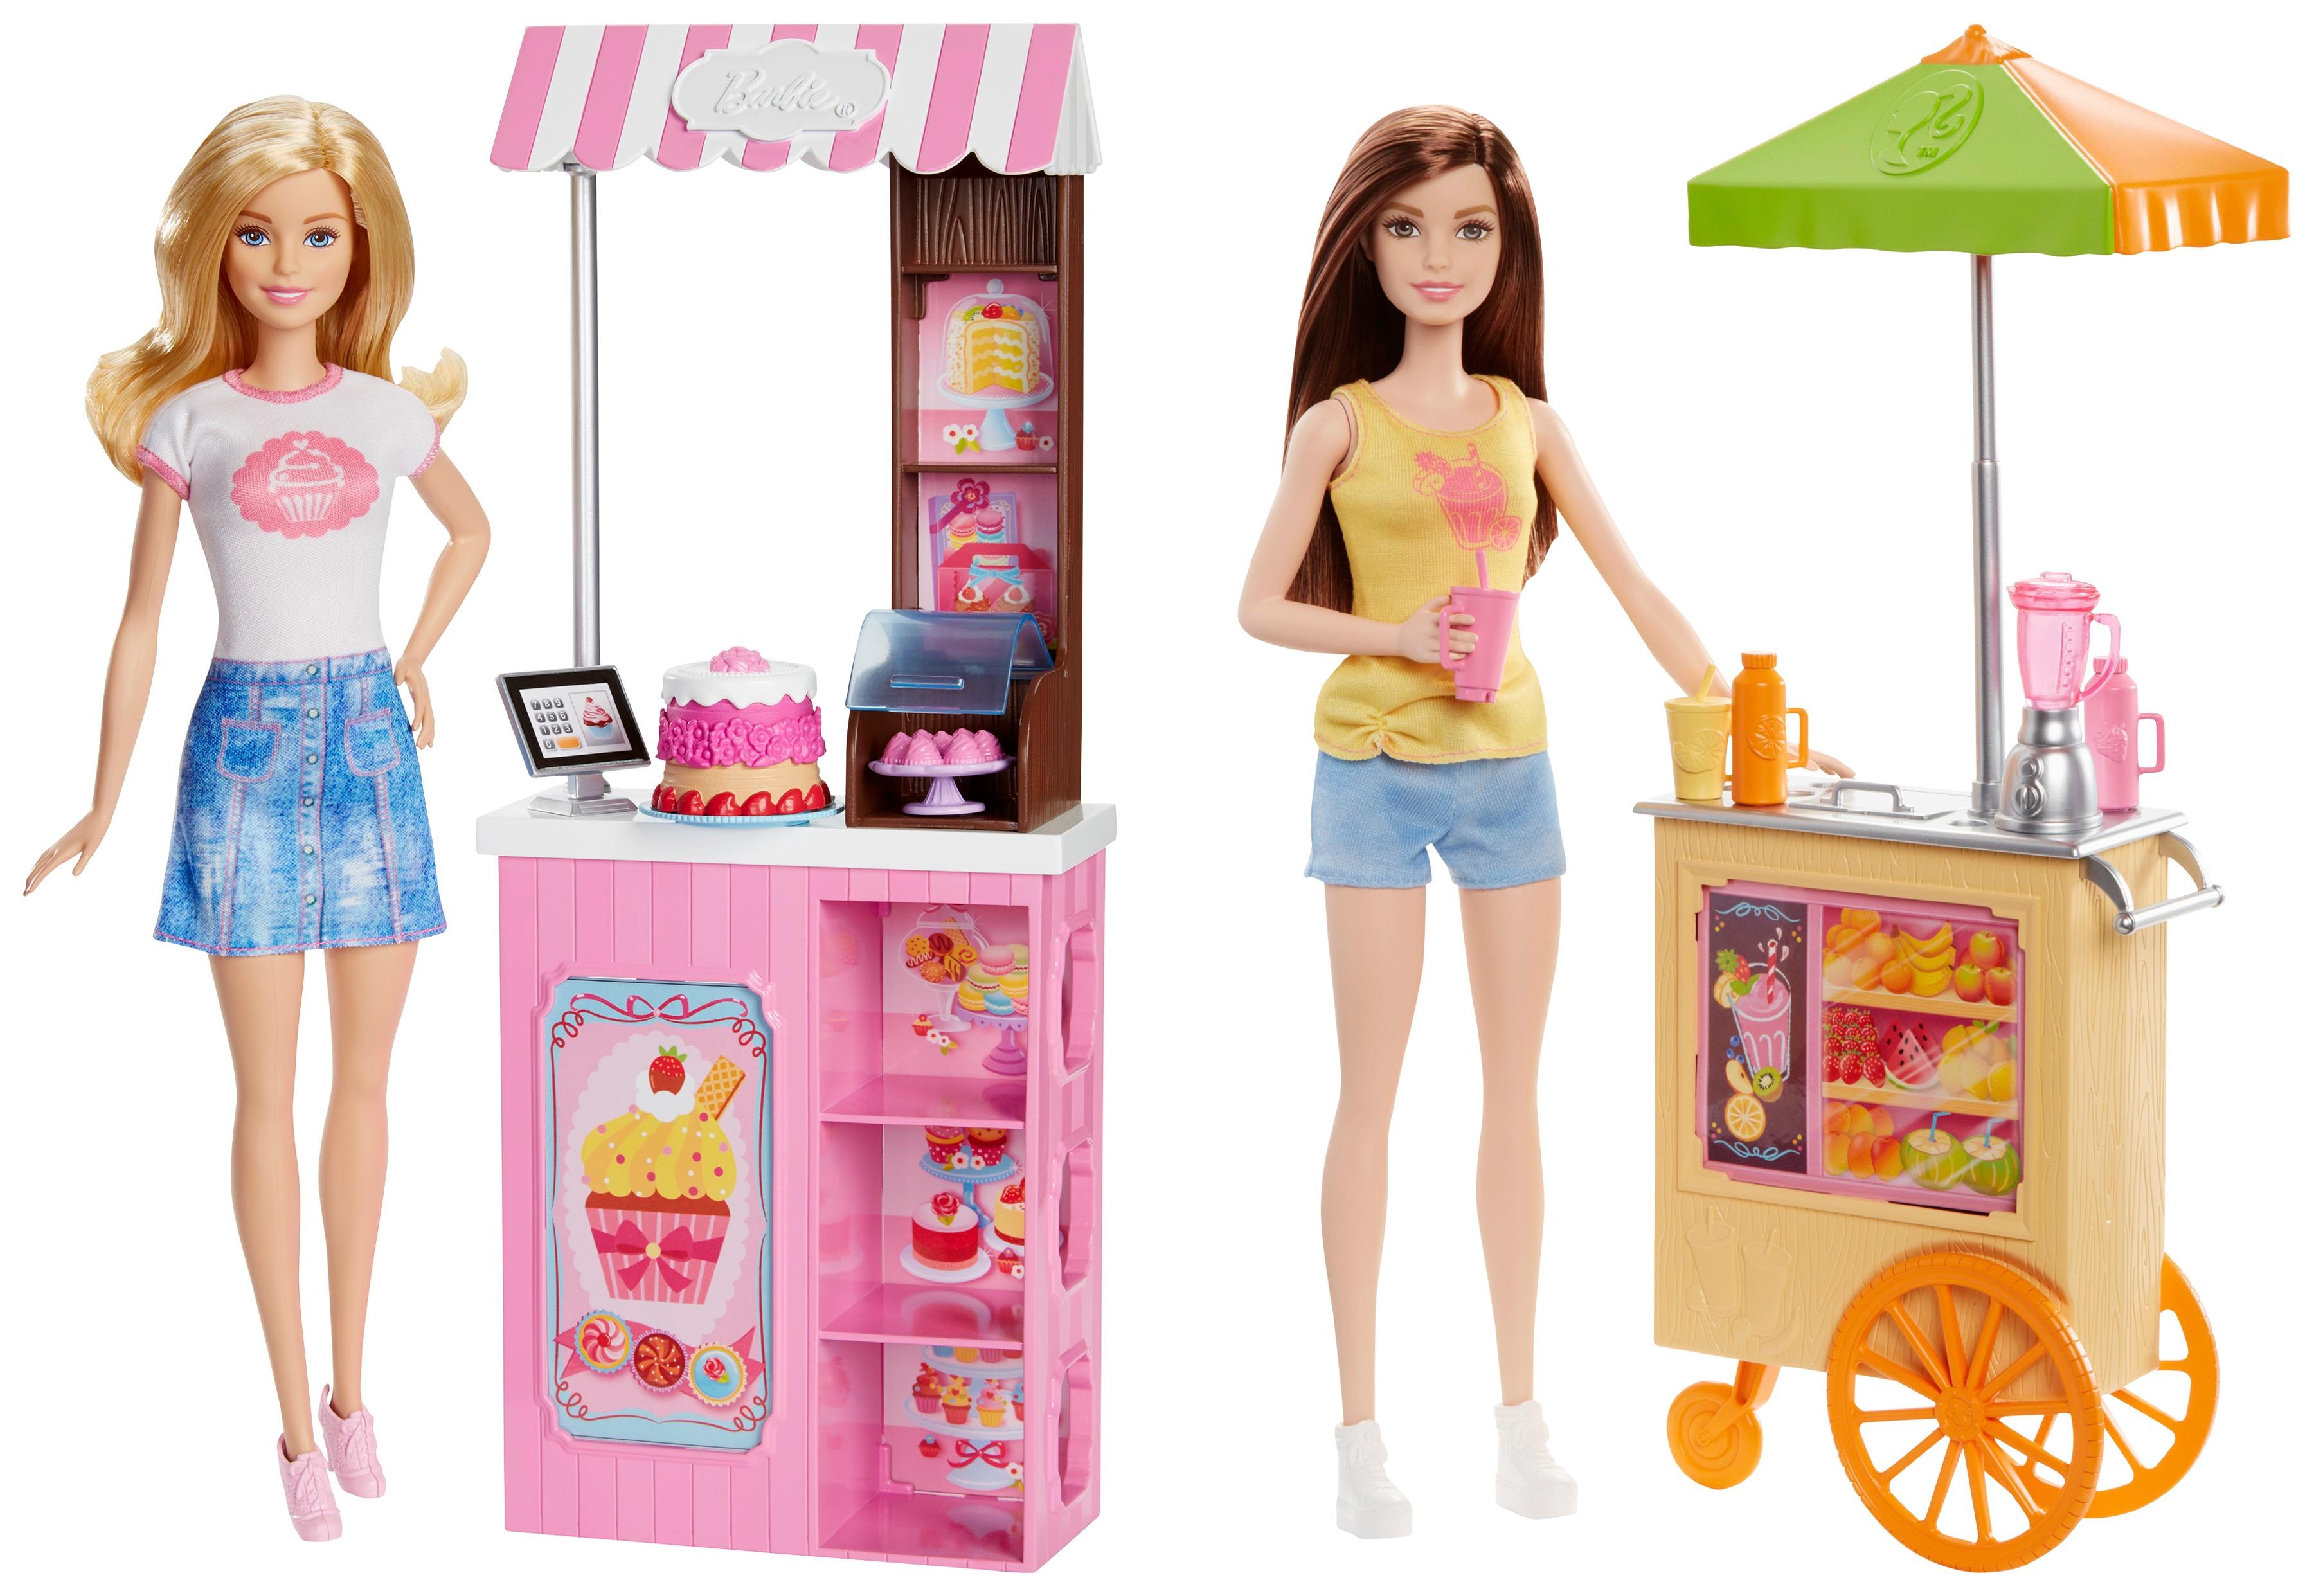 Customer Reviews: Barbie Careers Play Set Styles May Vary DNC70 - Best Buy